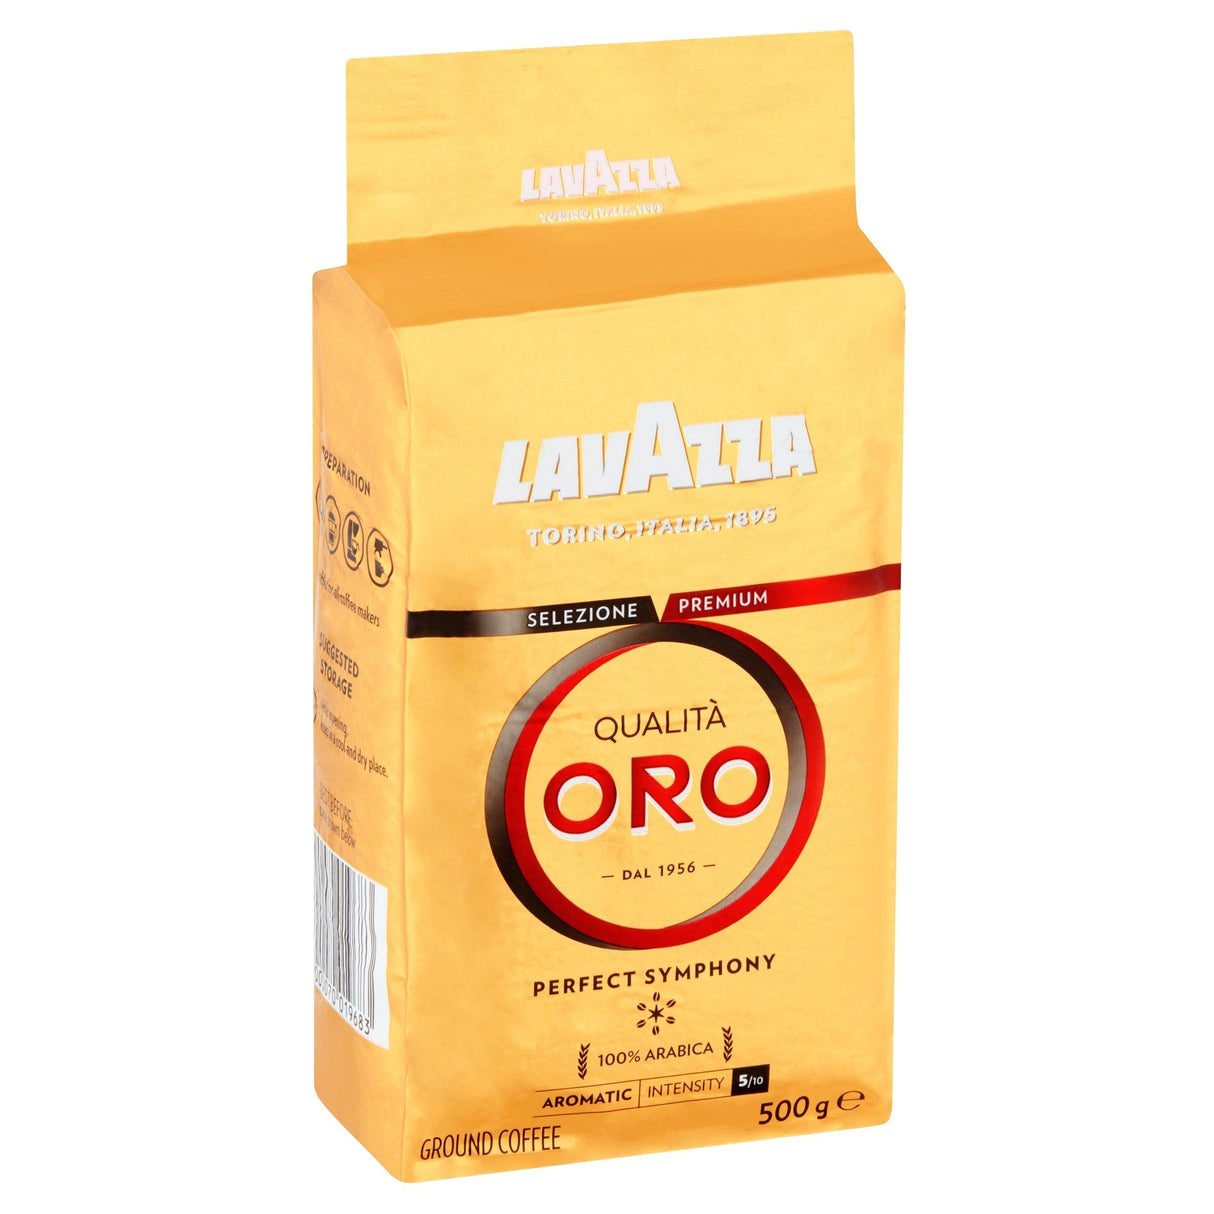 Lavazza Qualita Oro Coffee Ground 500g